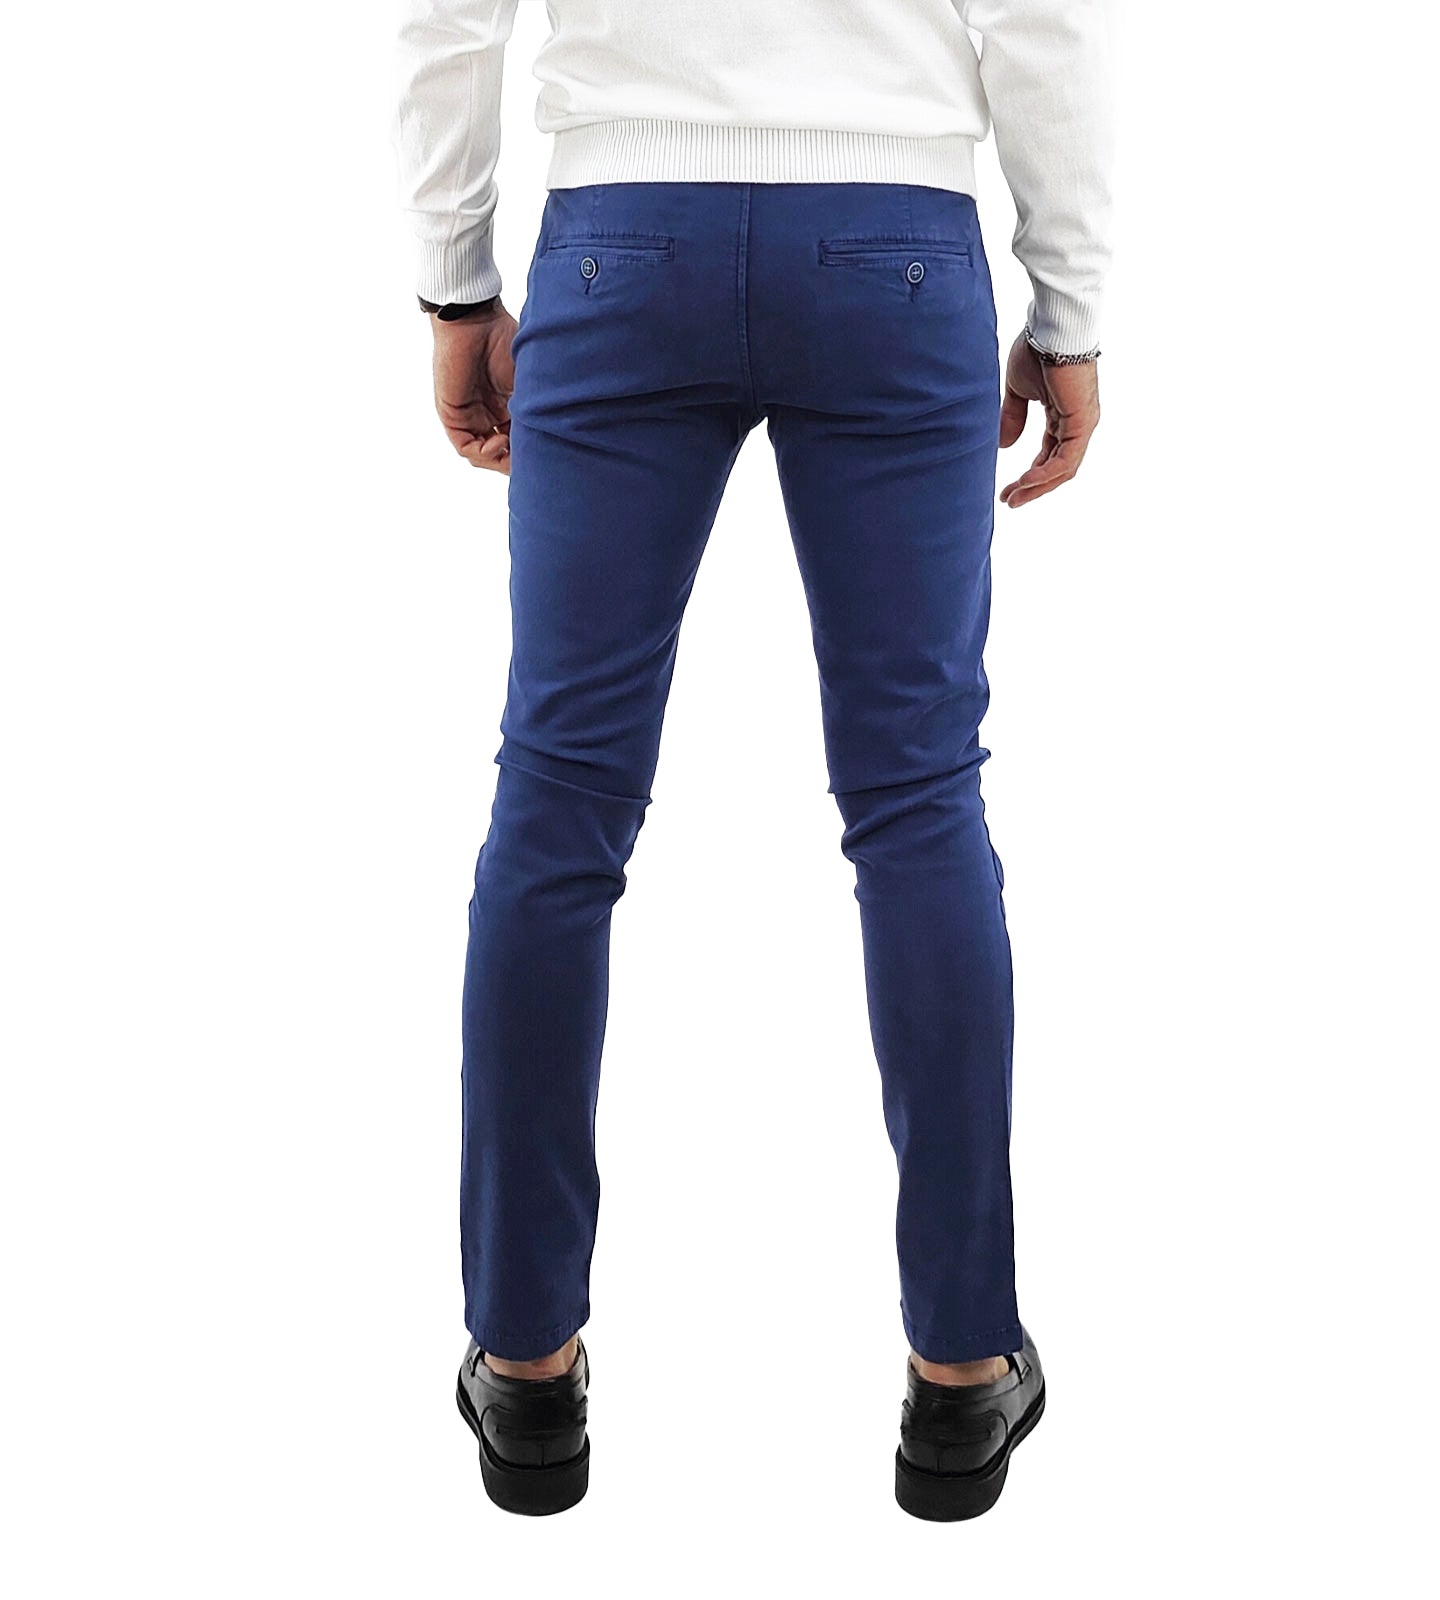 Pantalone Chino Uomo Tasca a Filetto colore Blu navy